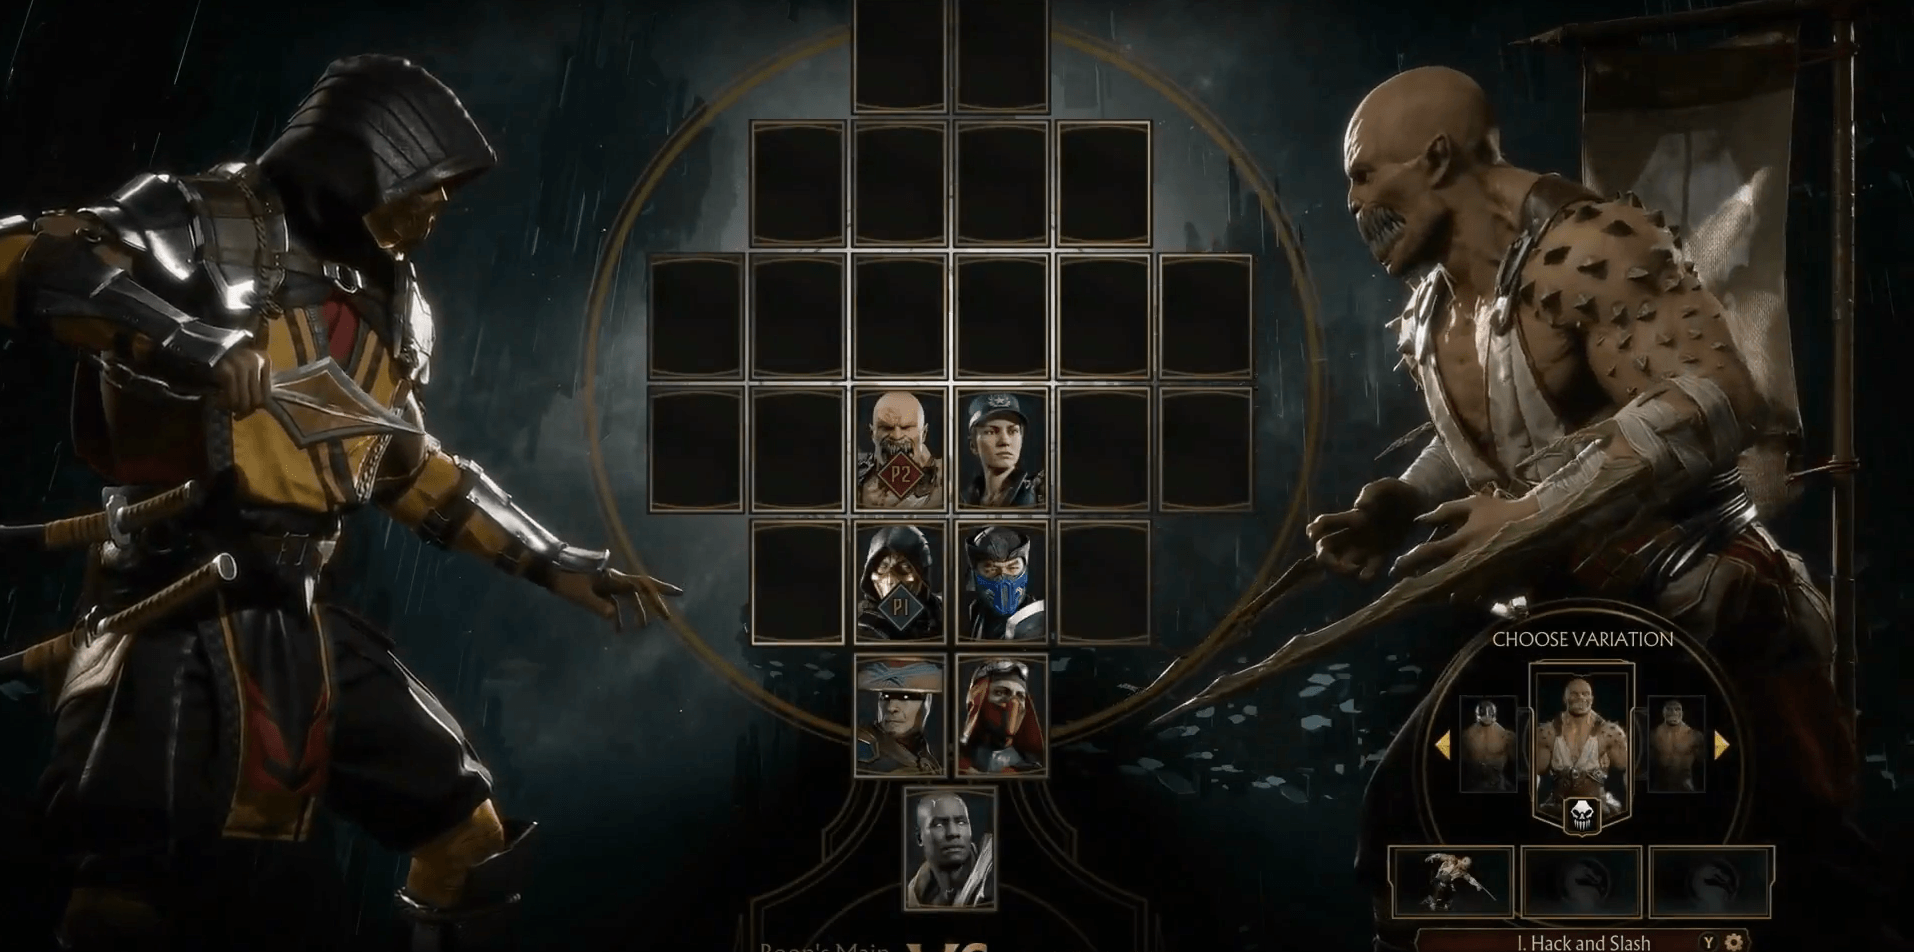 4k wallpaper Of Mortal Kombat 11 Characters